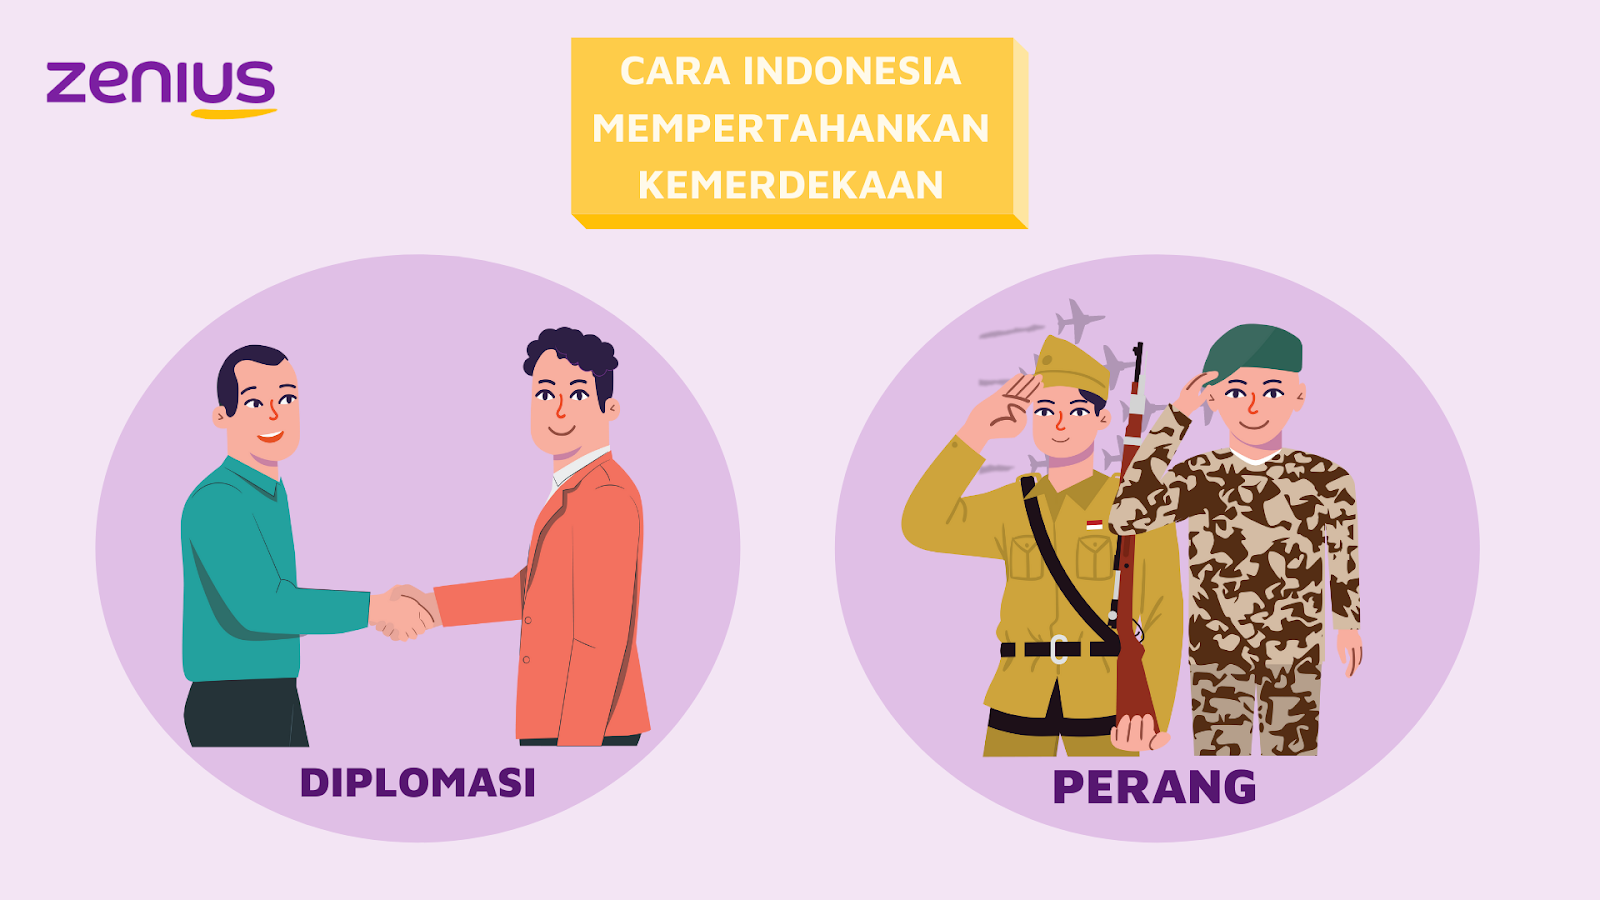 Cara untuk mempertahankan kemerdekaan Indonesia adalah dengan diplomasi dan berperang.